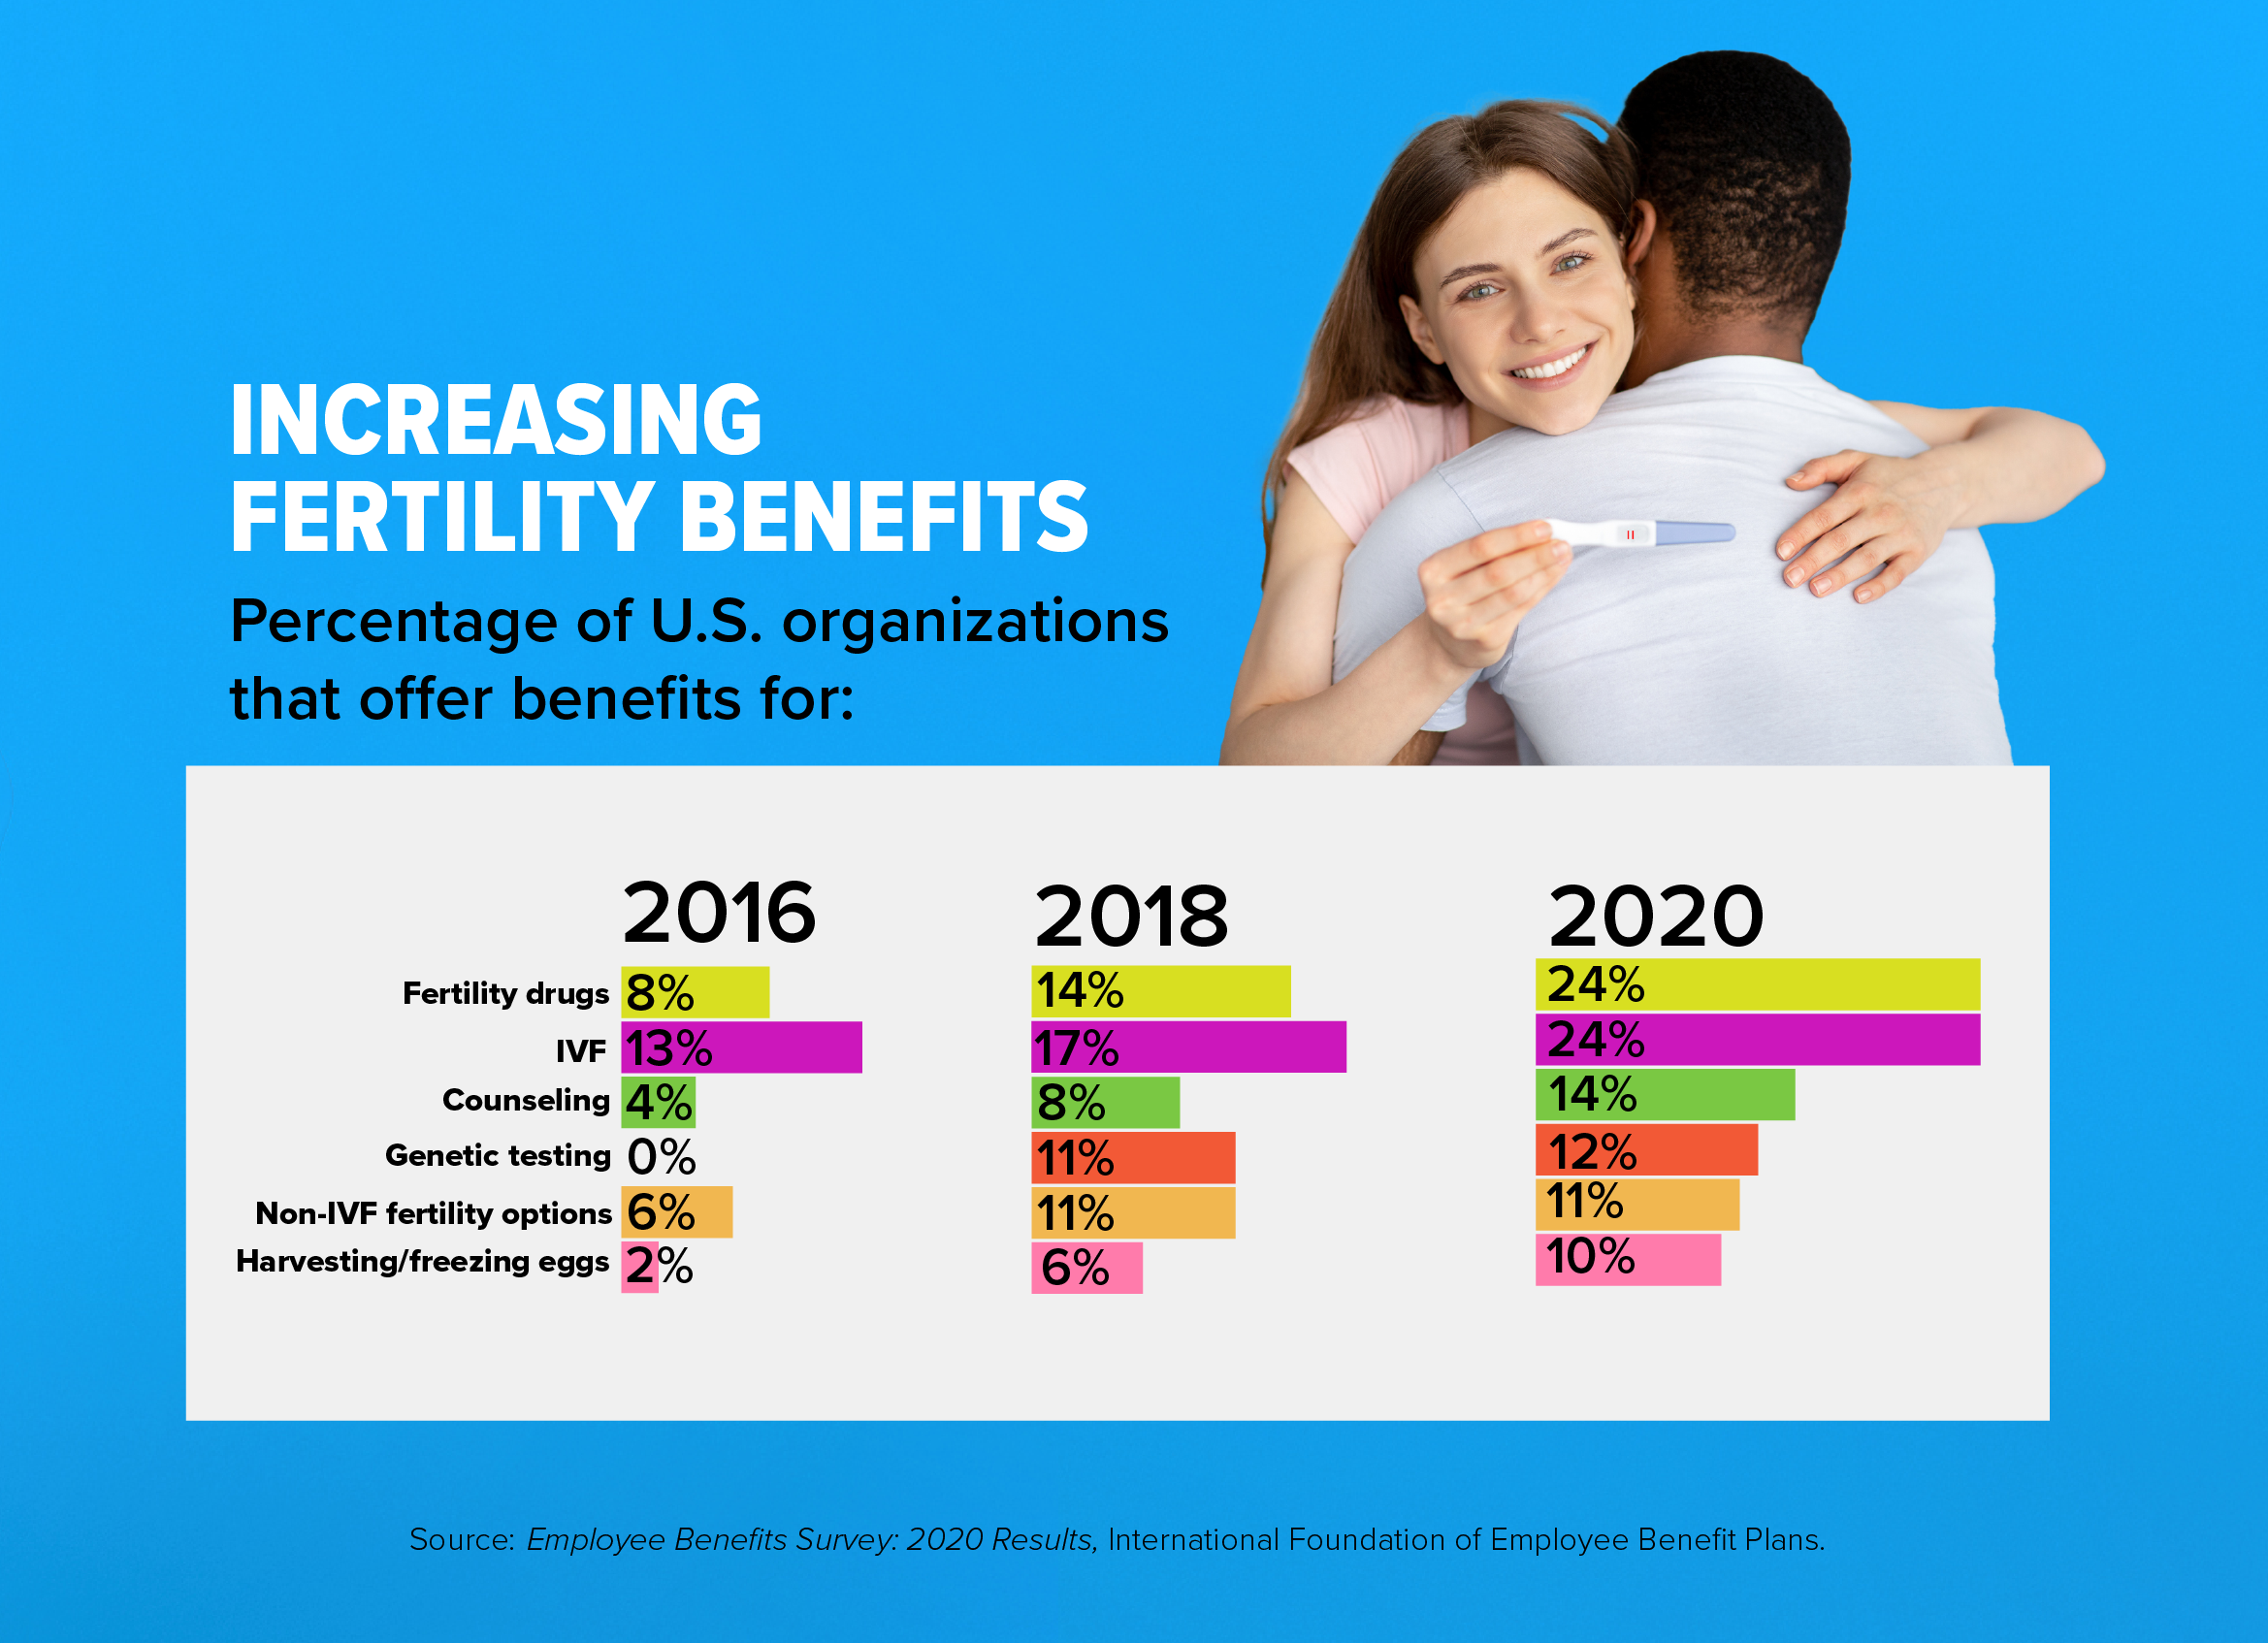 Fertility benefits